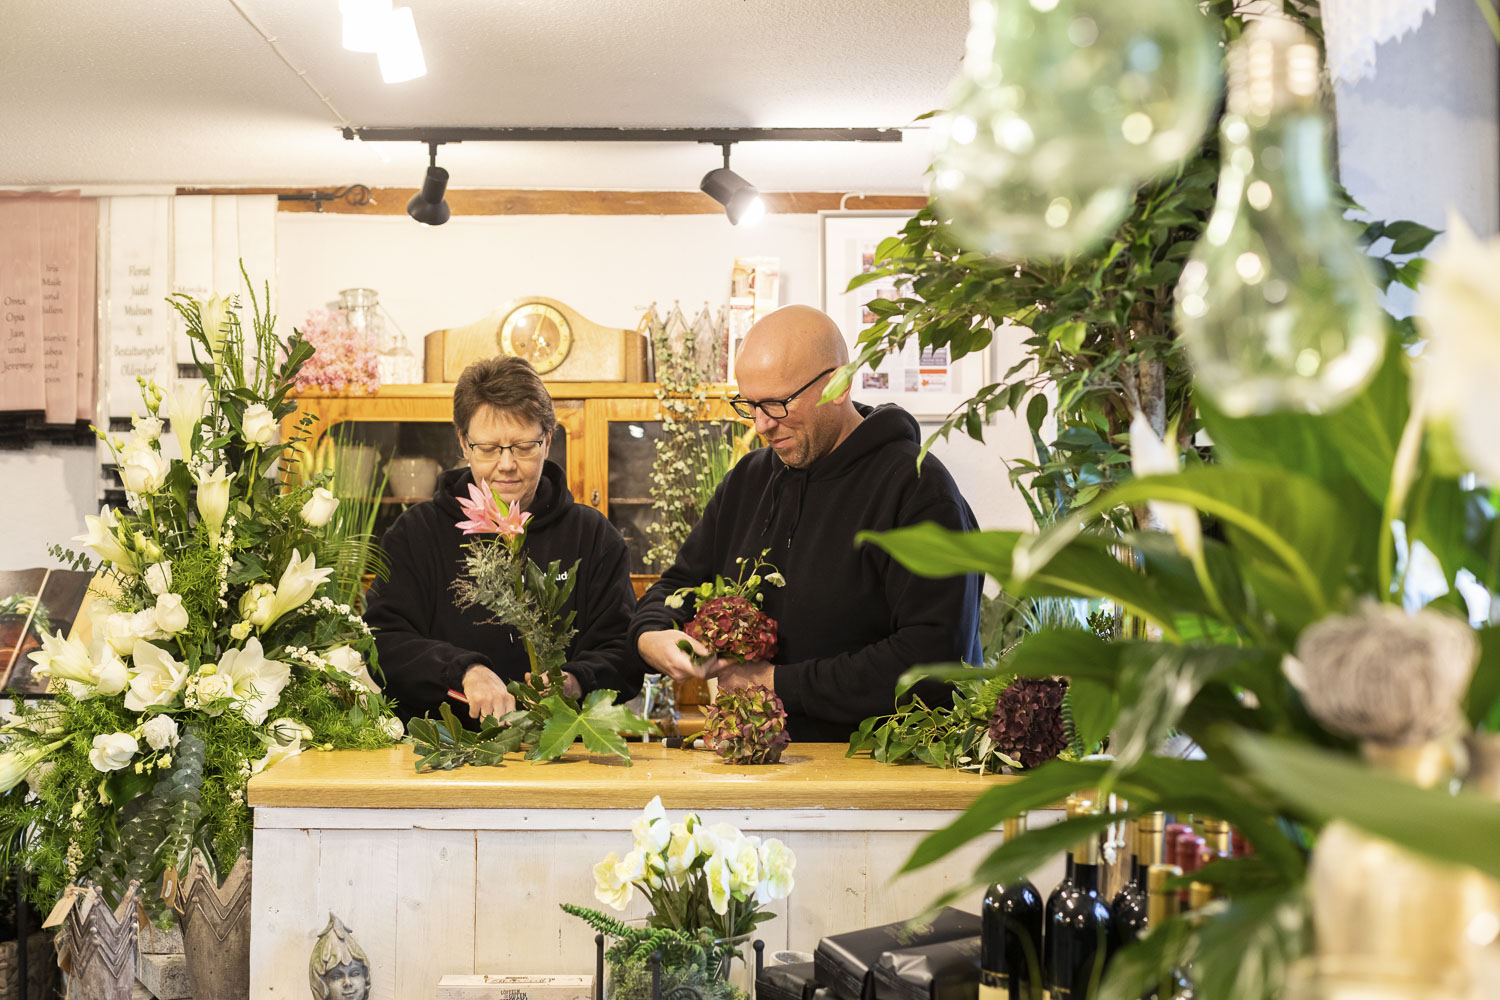 Florist Nicky Judel bindet mit einer Mitarbeiterin einen Blumenstrauß